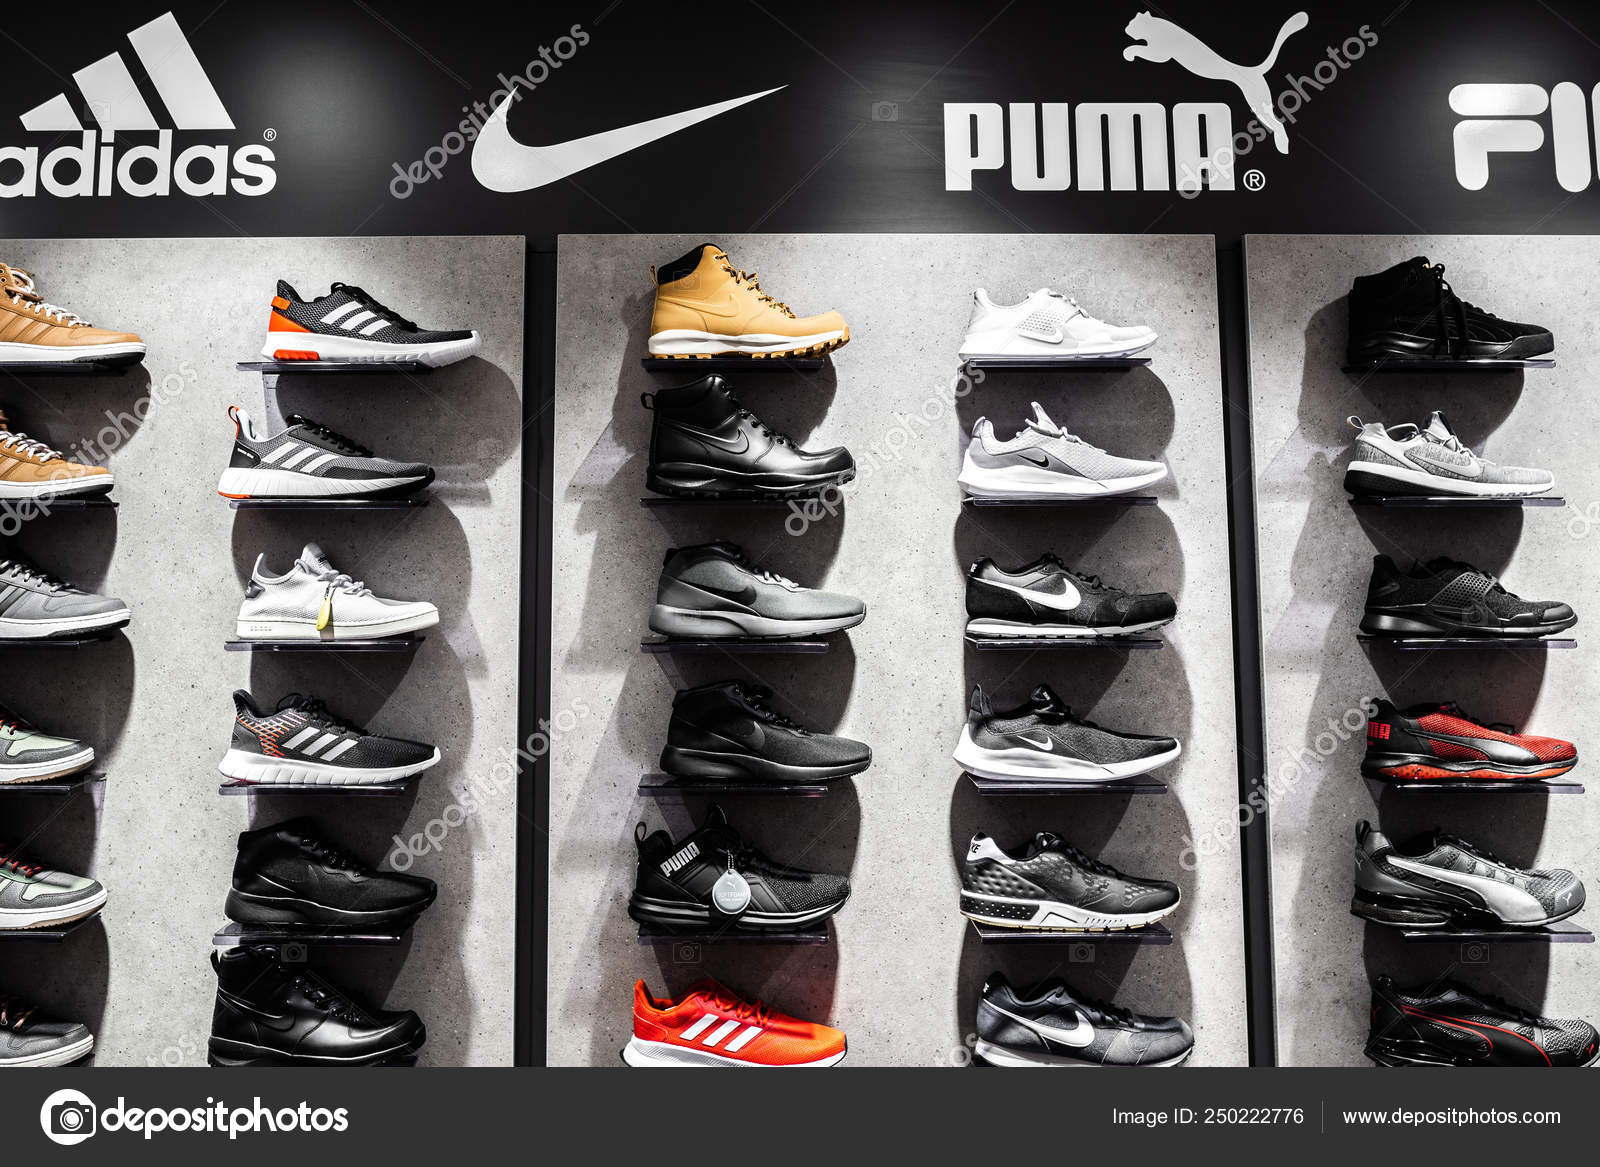 adidas puma shoes